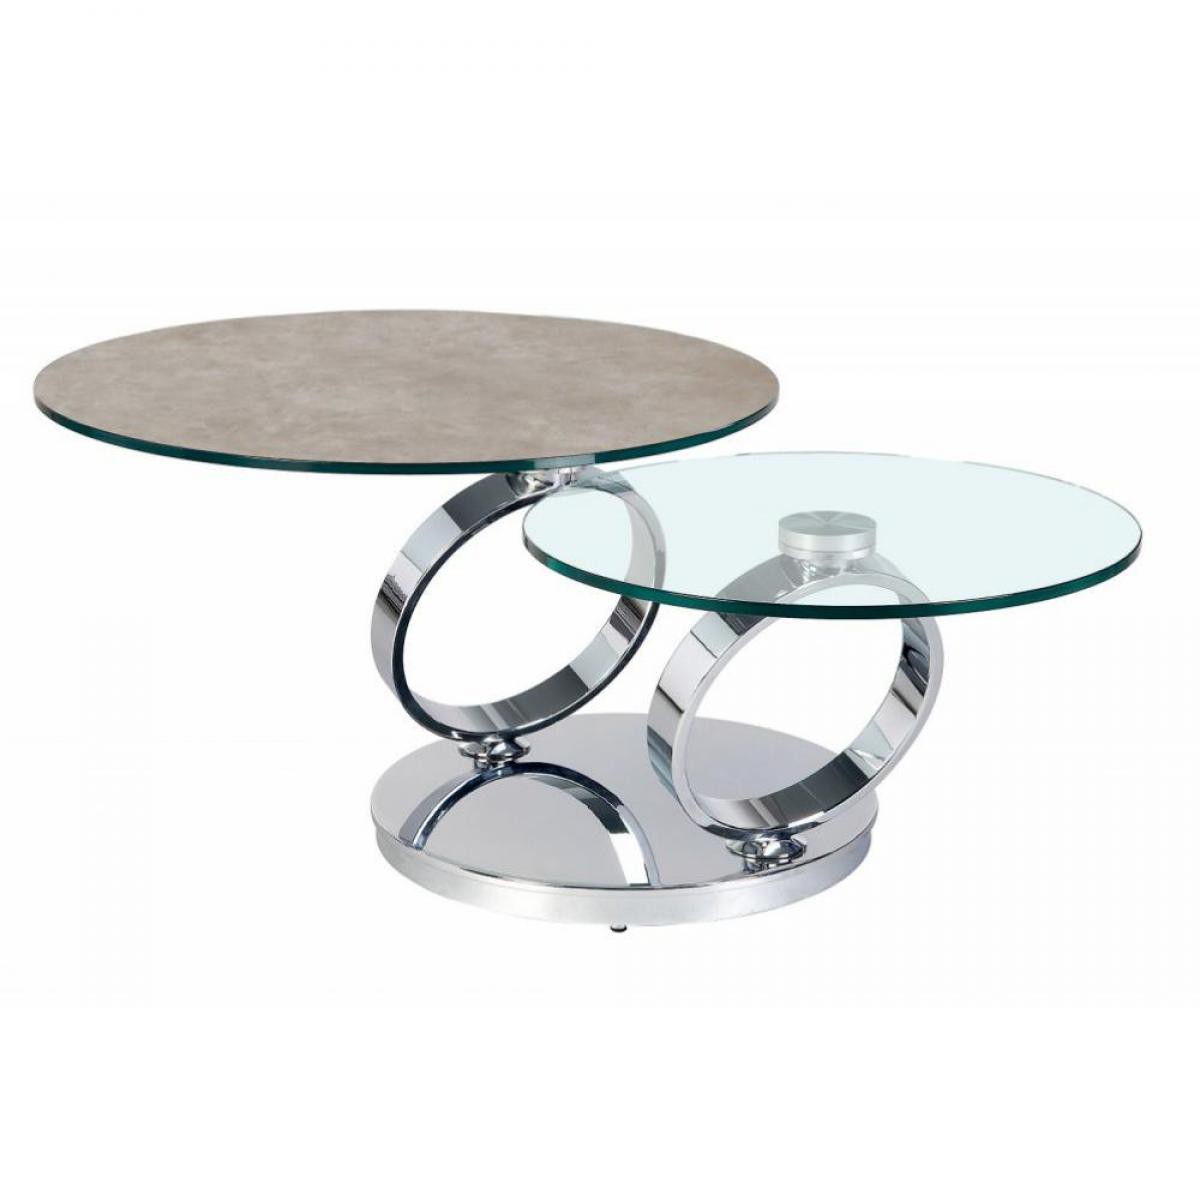 Inside 75 - Table OLYMPE à plateaux pivotants en verre et céramique GRIS - Tables à manger